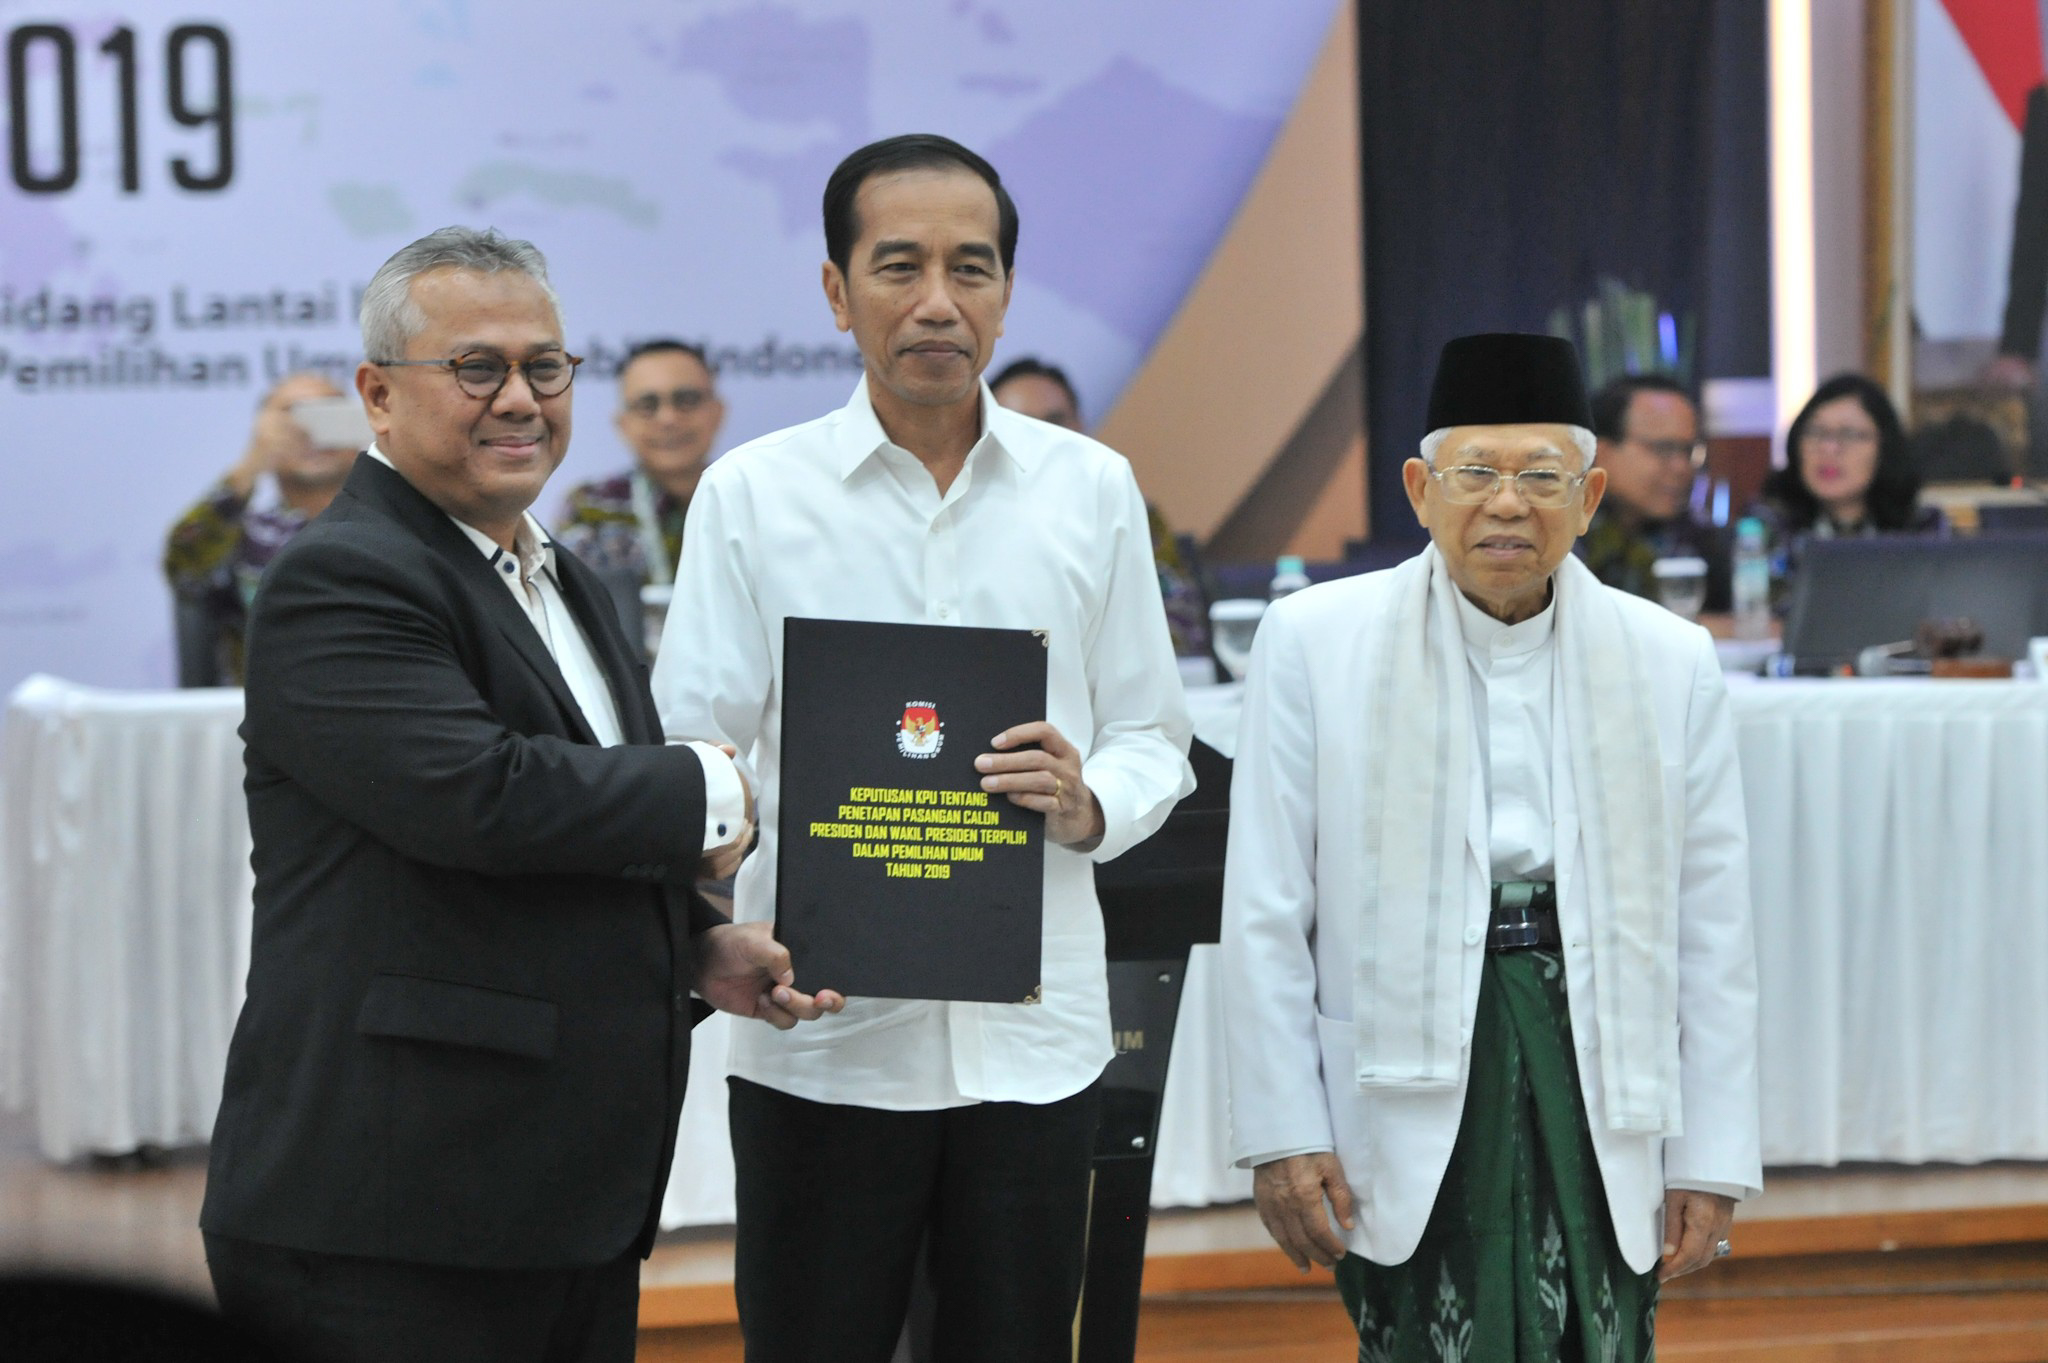 Pasangan Joko Widodo (Jokowi)-Ma'ruf Amin ditetapkan sebagai Presiden dan Wakil Presiden periode 2019-2024 oleh Komisi Pemilihan Umum (KPU), Minggu 30 Juni 2019.